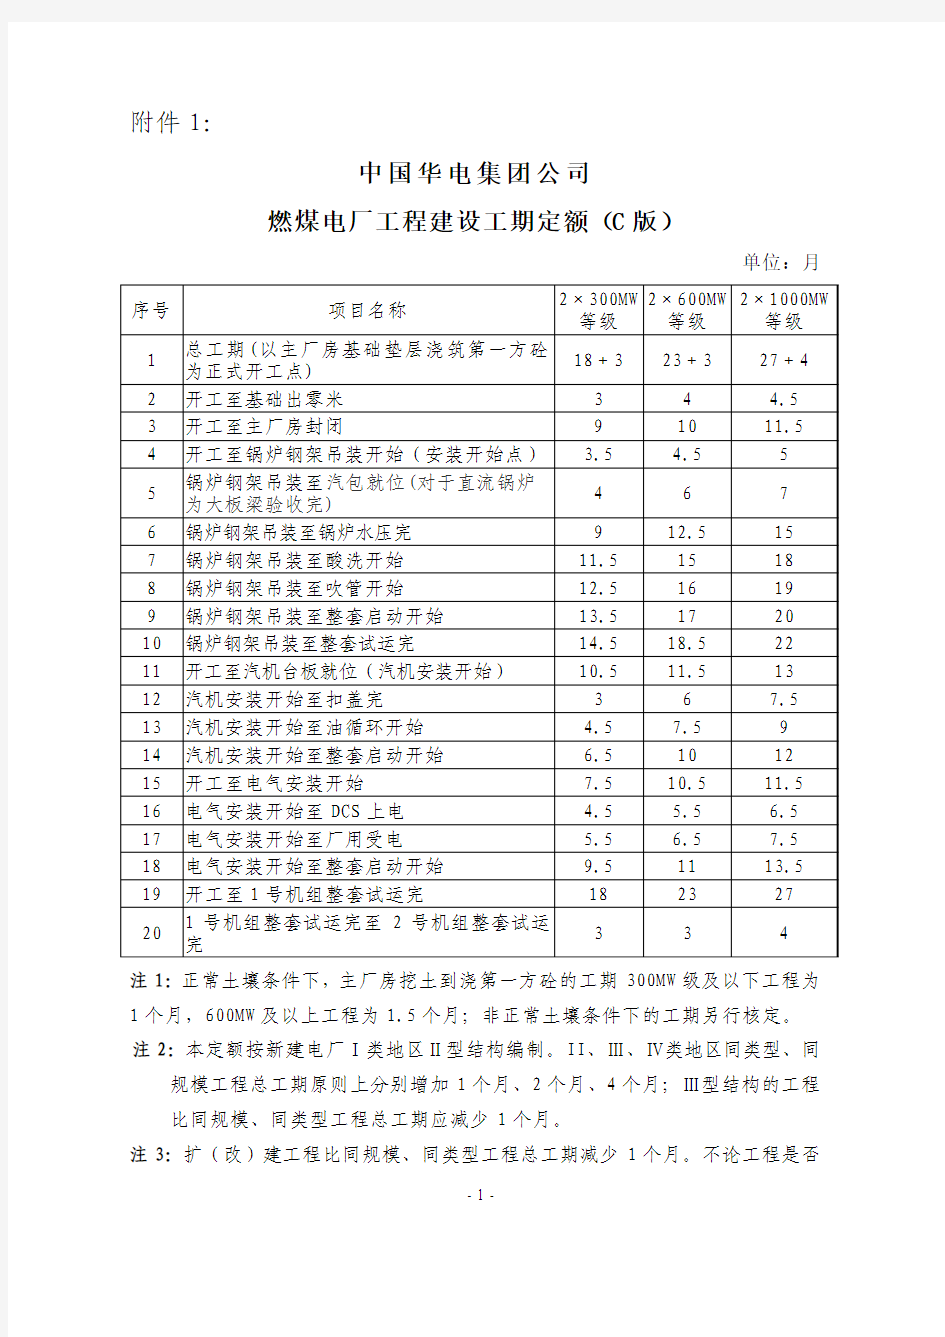 中国华电集团公司燃煤电厂工程建设工期定额(C版)